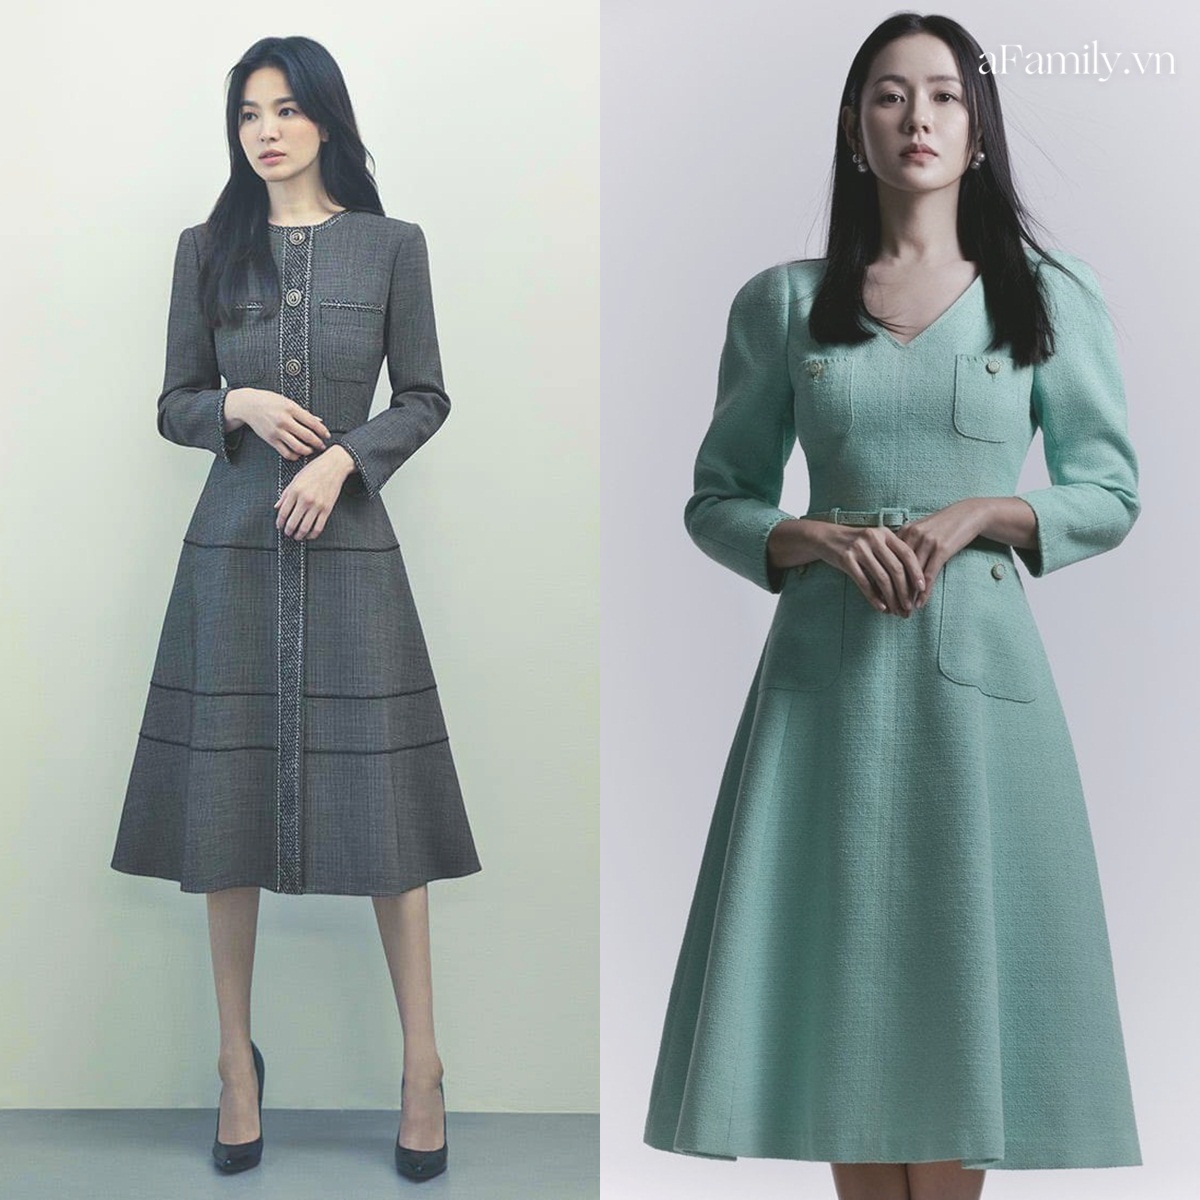 Song Hye Kyo Son Ye Jin làm mẫu đồ công sở Thu Đông - Ảnh 3.